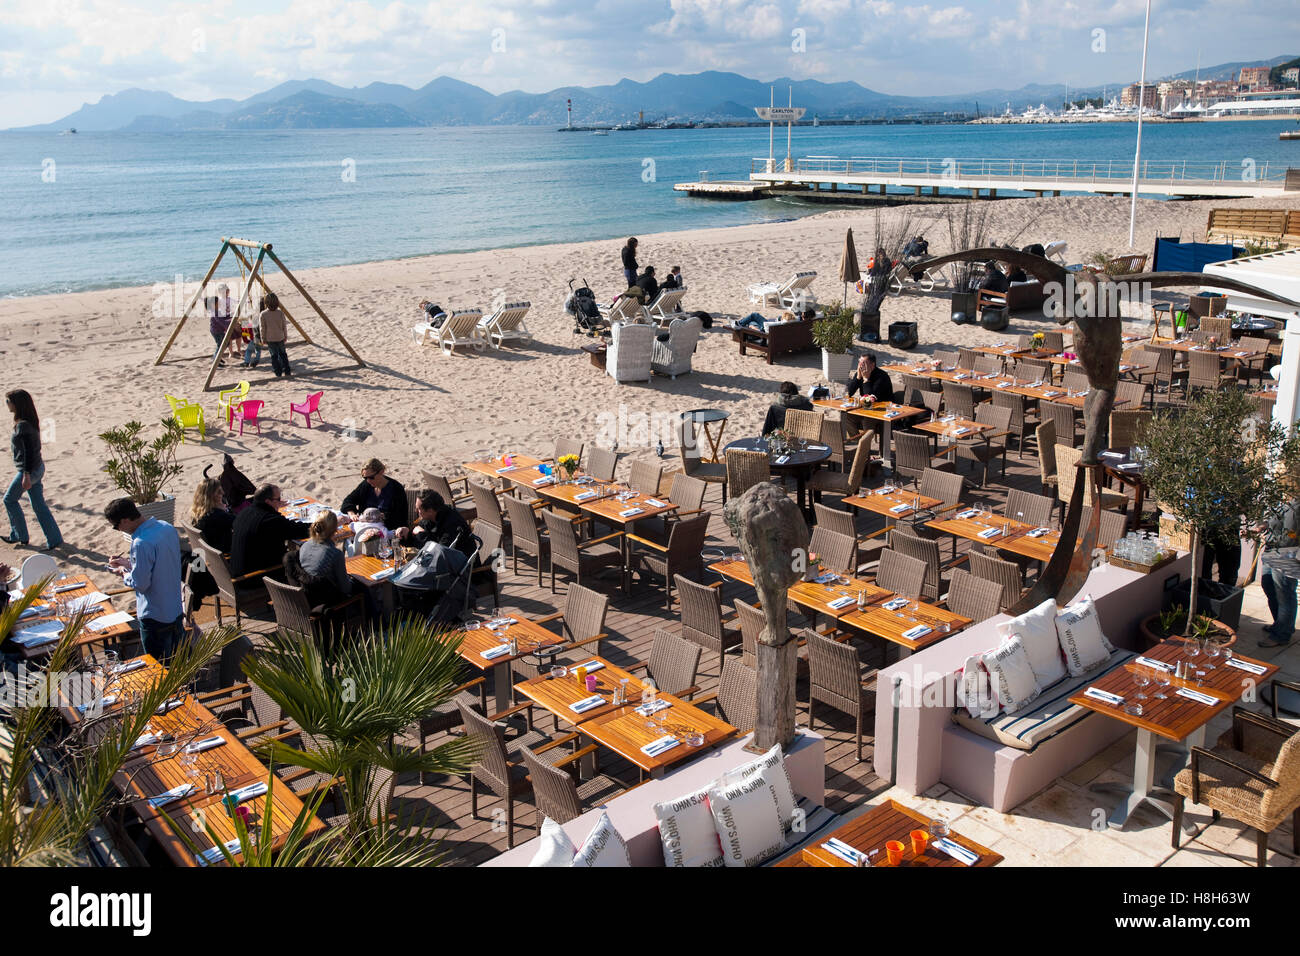 Frankreich, Cote d Azur, Cannes, Boulevard de la Croisette, elegante Strandrestaurants an der Flanierpromenade Stock Photo